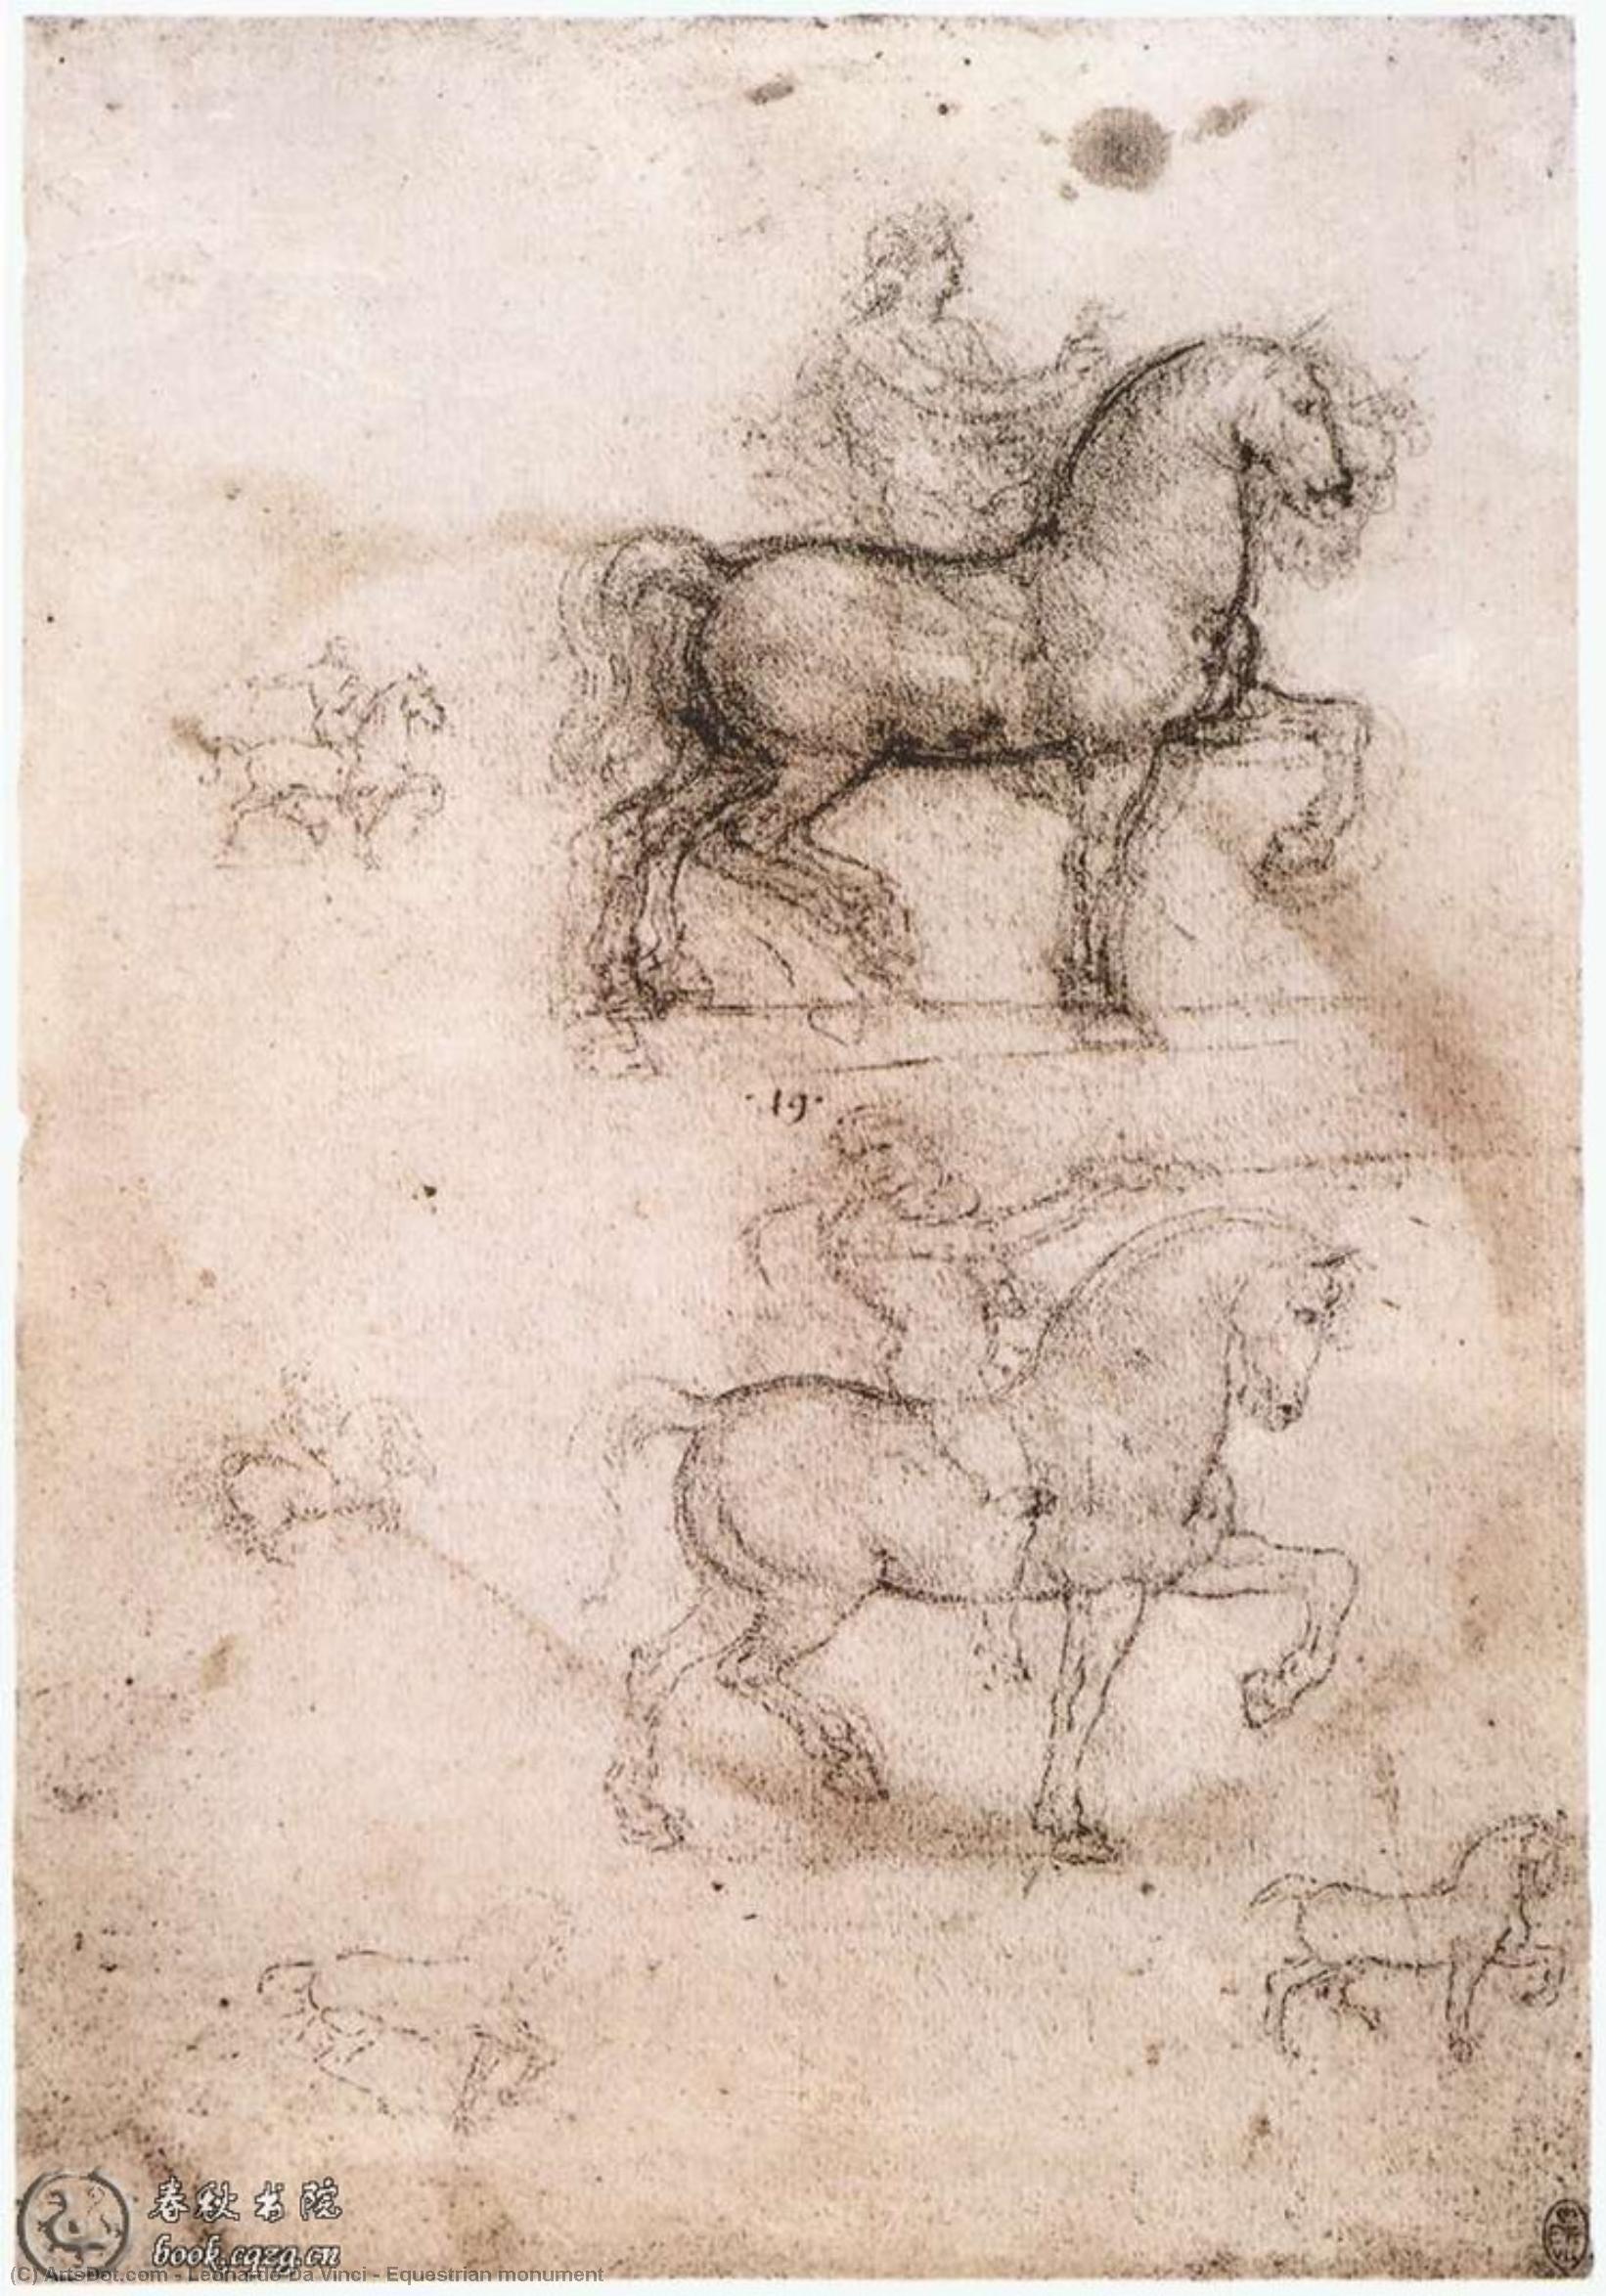 WikiOO.org - Εγκυκλοπαίδεια Καλών Τεχνών - Ζωγραφική, έργα τέχνης Leonardo Da Vinci - Equestrian monument